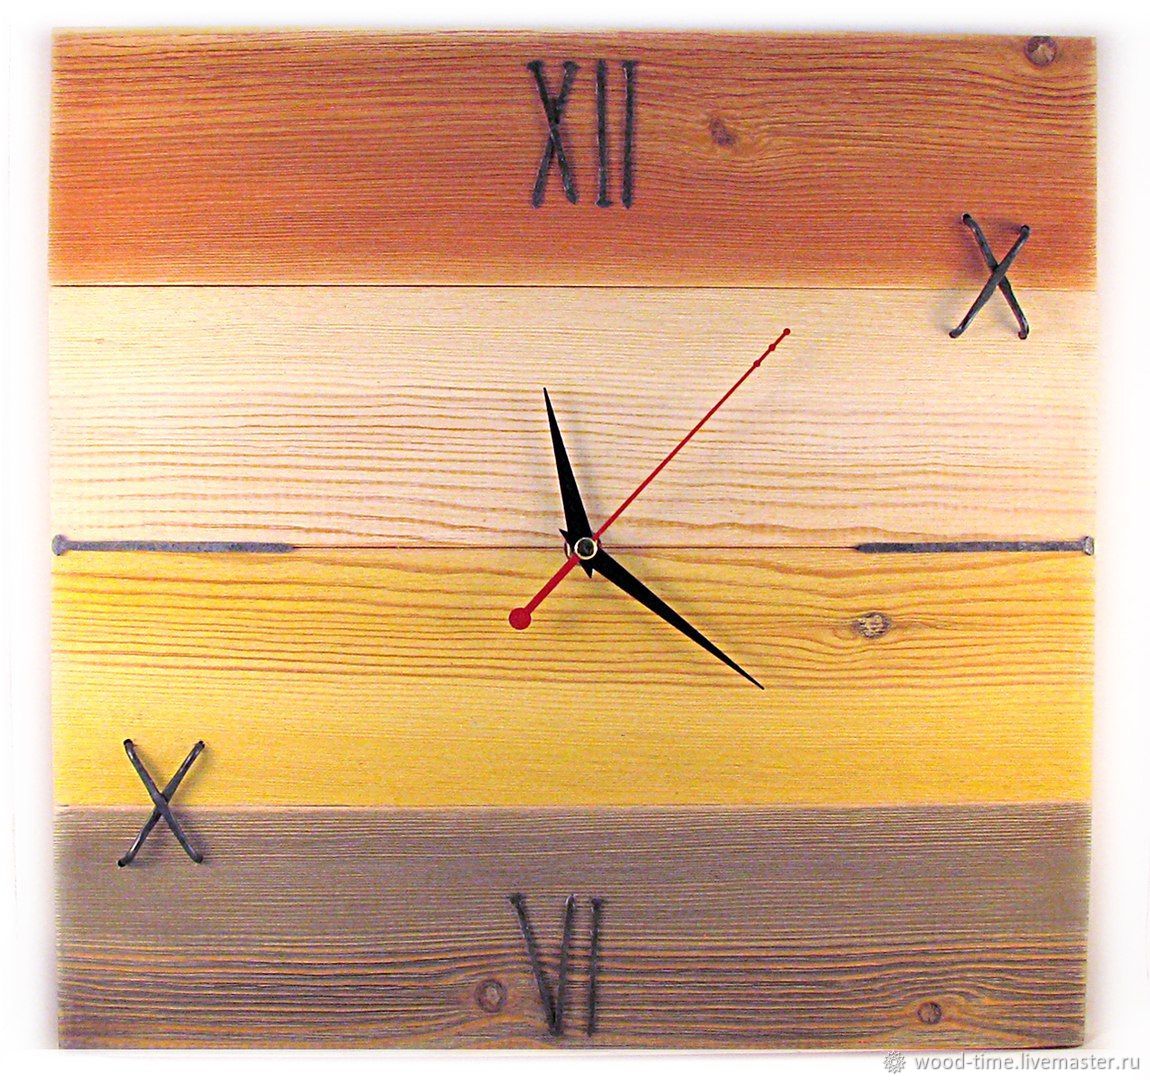 Wooden time. Настенные часы картина из дерева. Часы из дерева Минимализм. Часы настенные из дерева Минимализм. Деревянные настенные часы Минимализм геометрия.